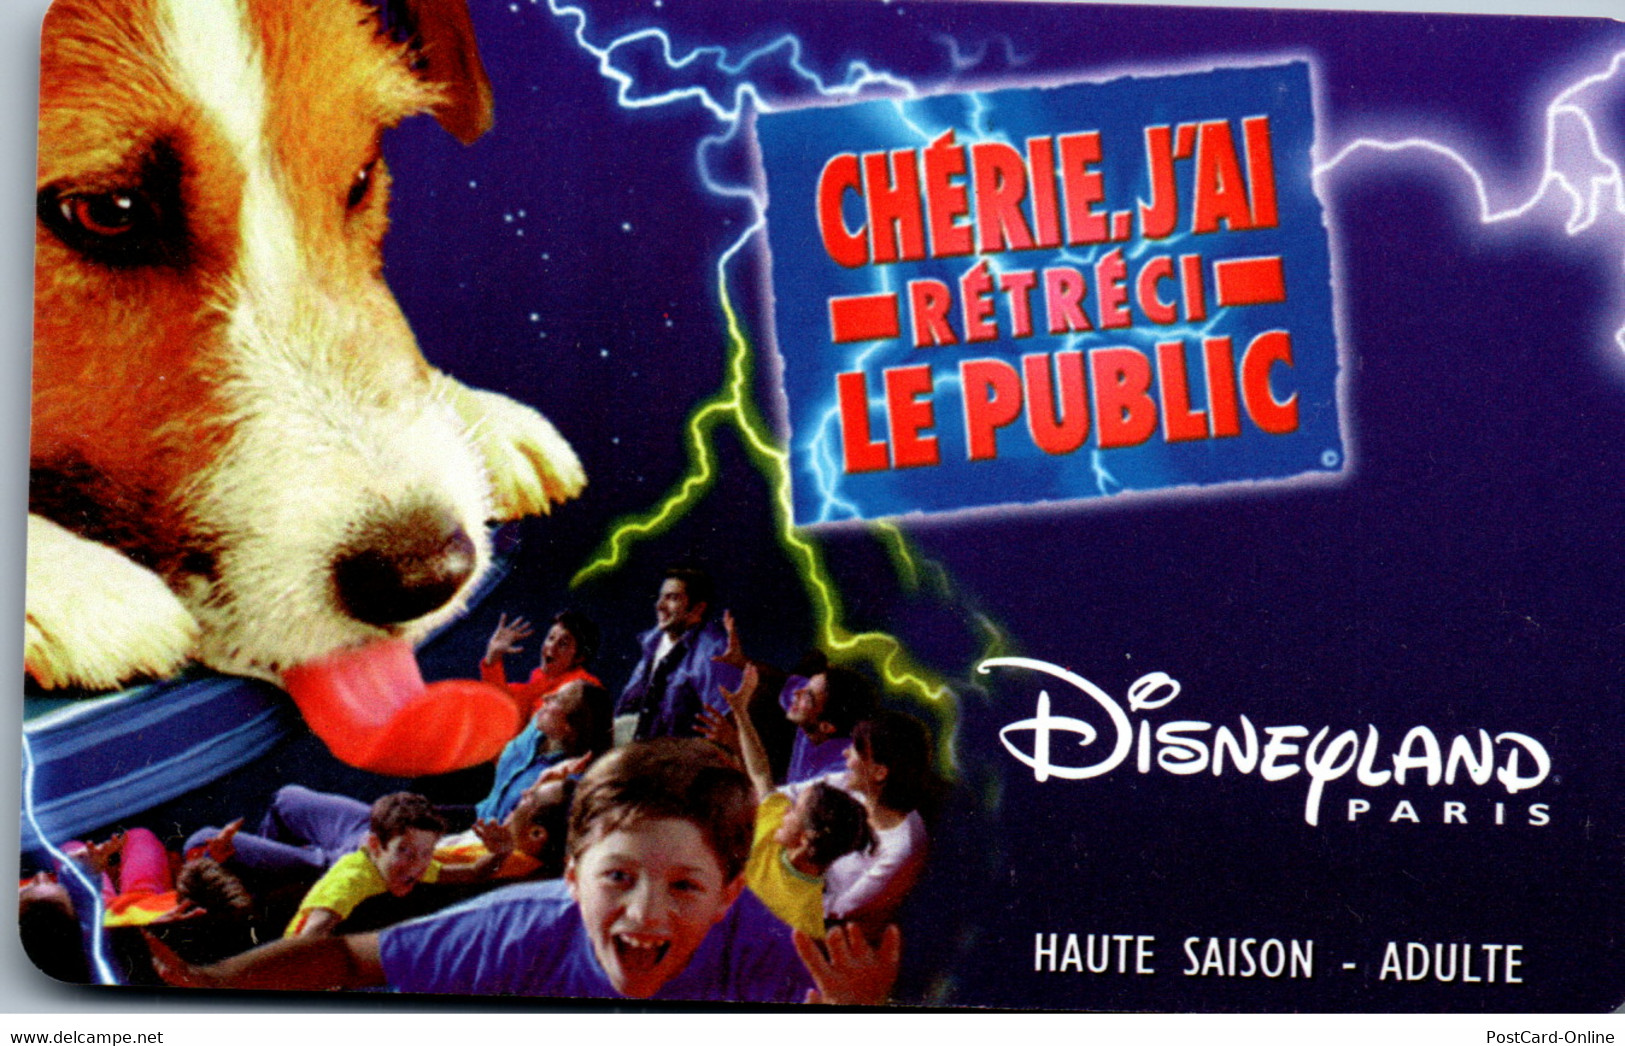 19494 - Frankreich - Disneyland Paris , Eintrittskarte , Adult , Haute Saison - Disney-Pässe